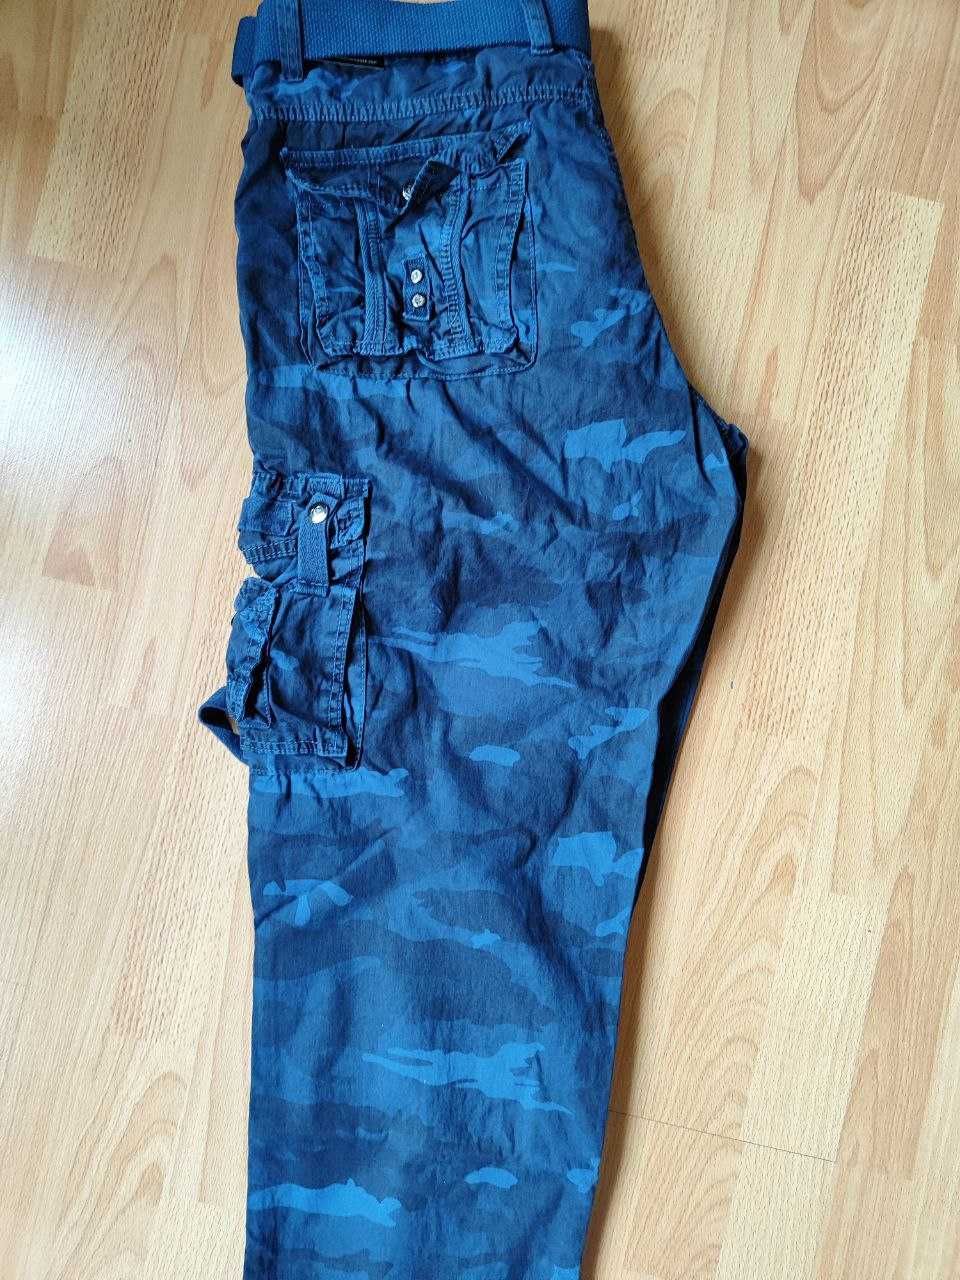 Мужские брюки карго (с боковыми карманами) в камуфляжной расцветке.